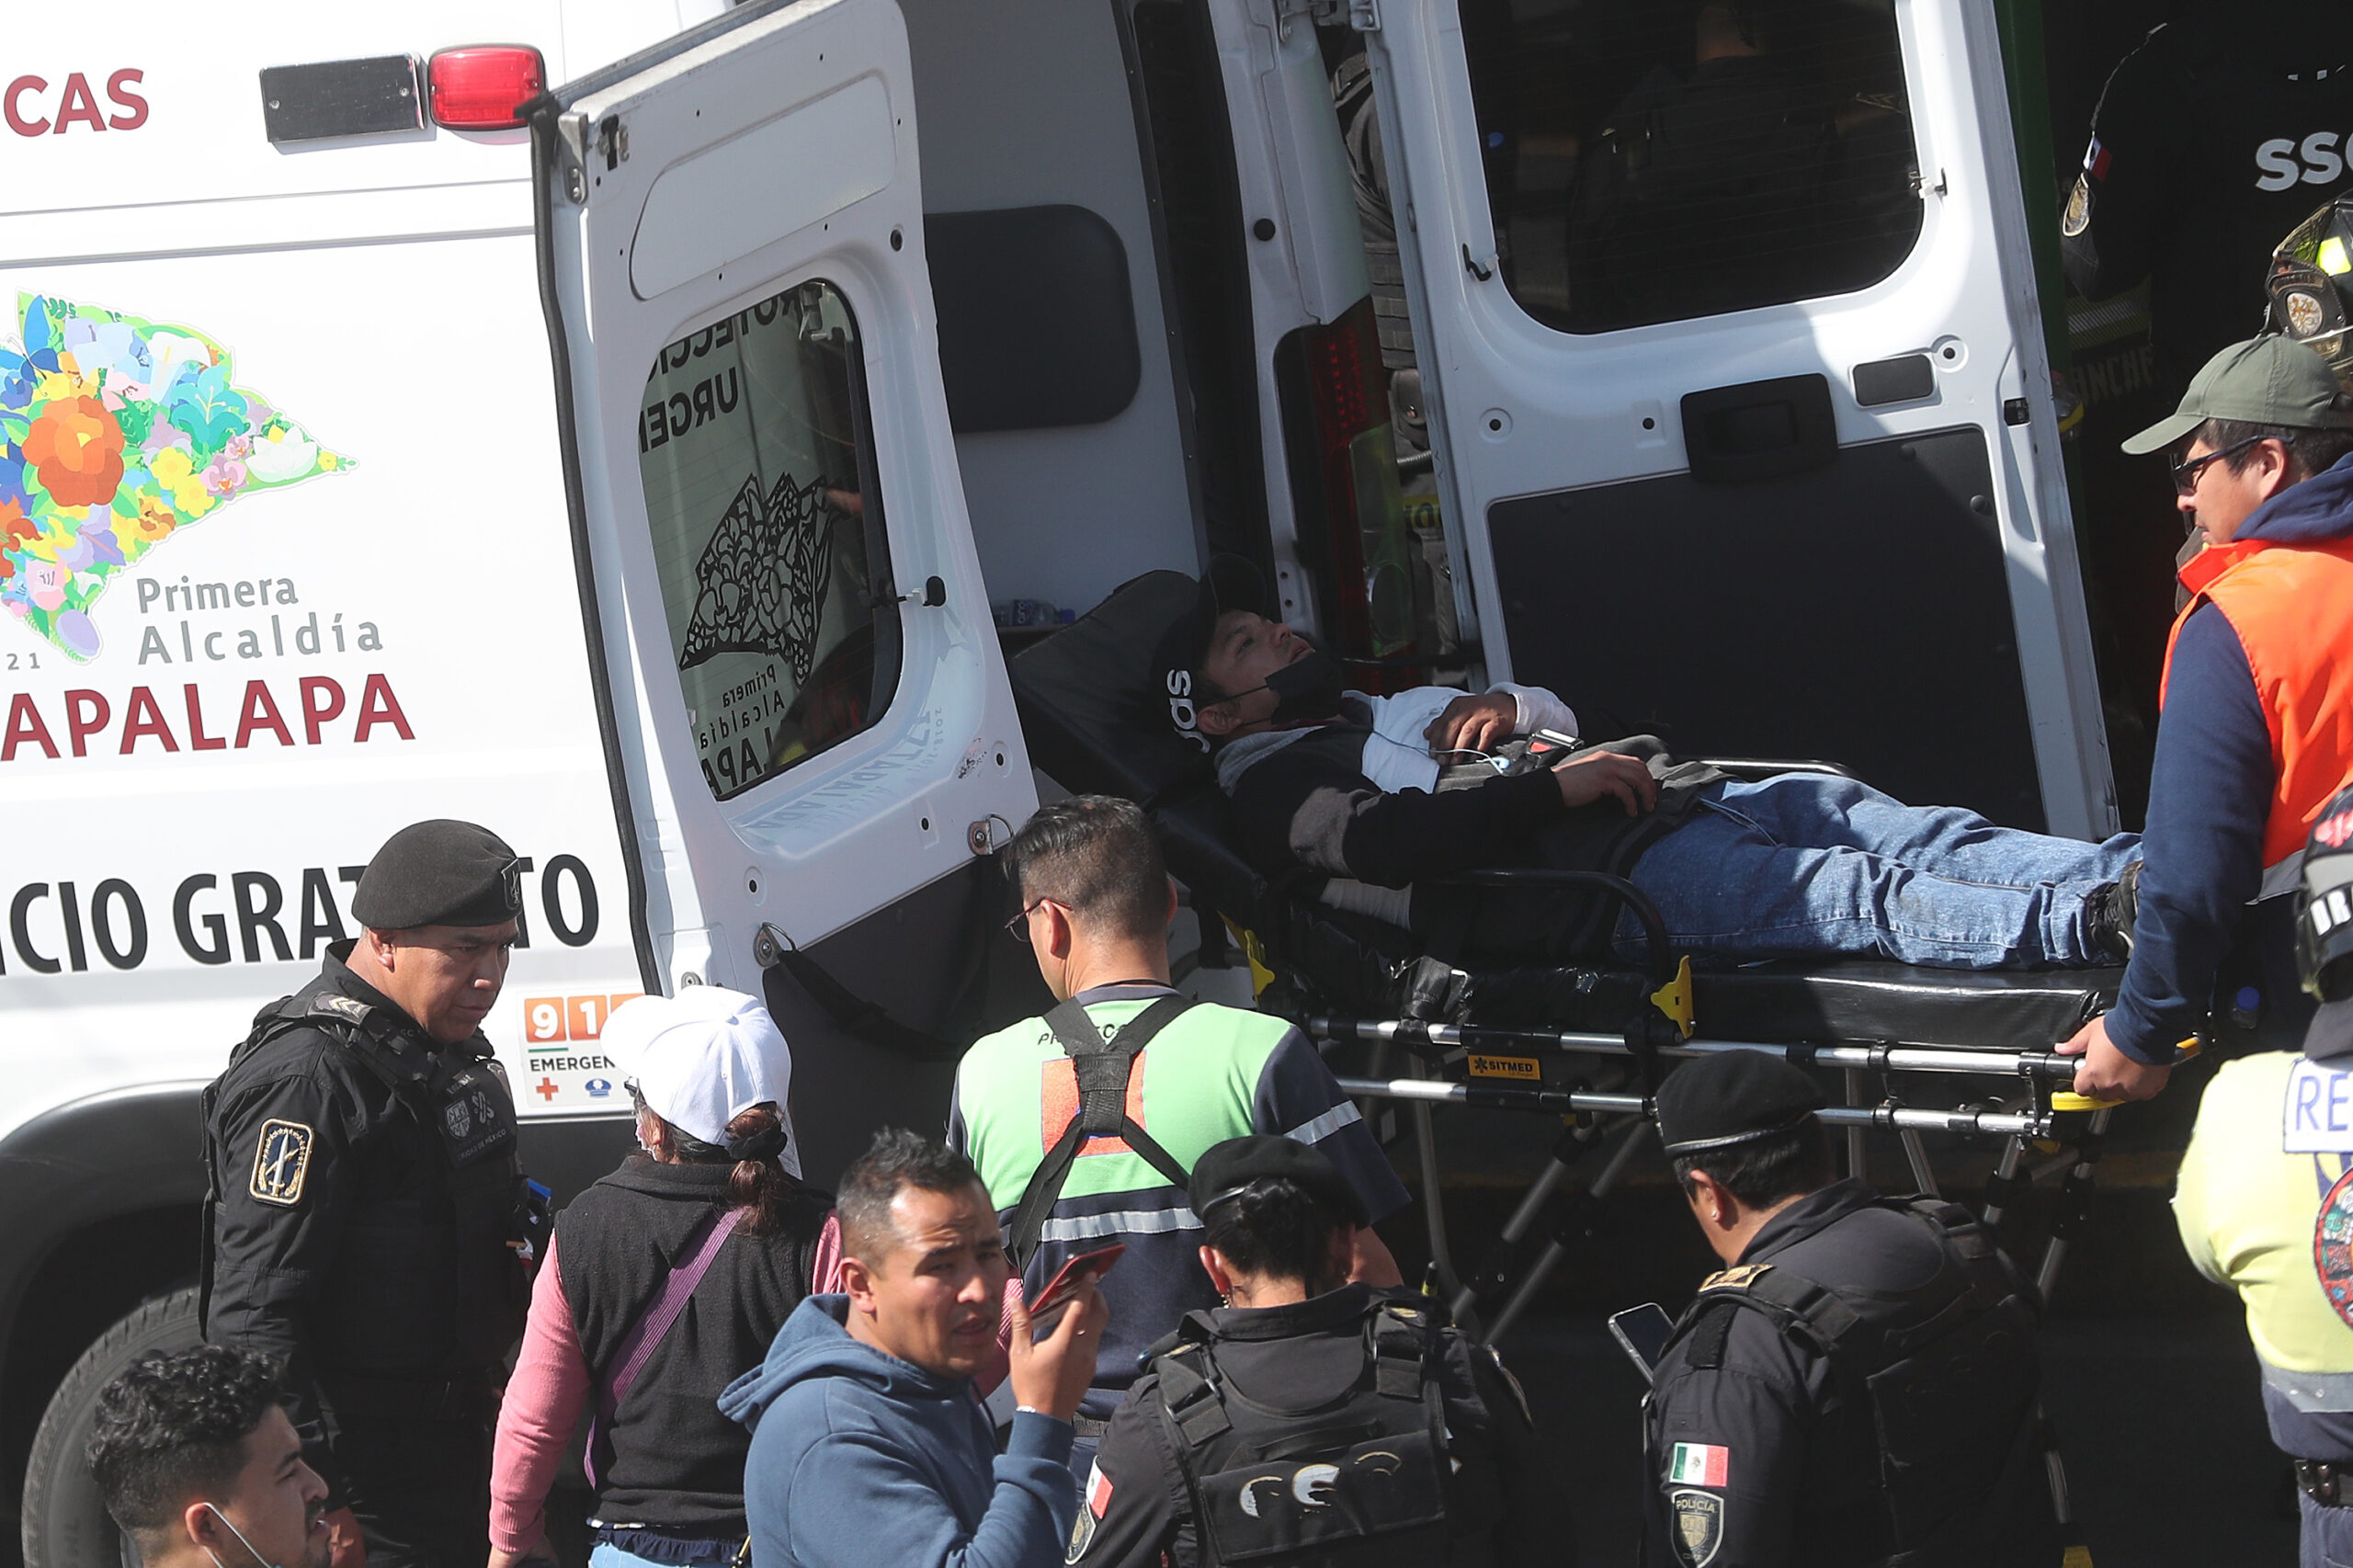 Confirman un muerto y más de 50 lesionados por choque en metro